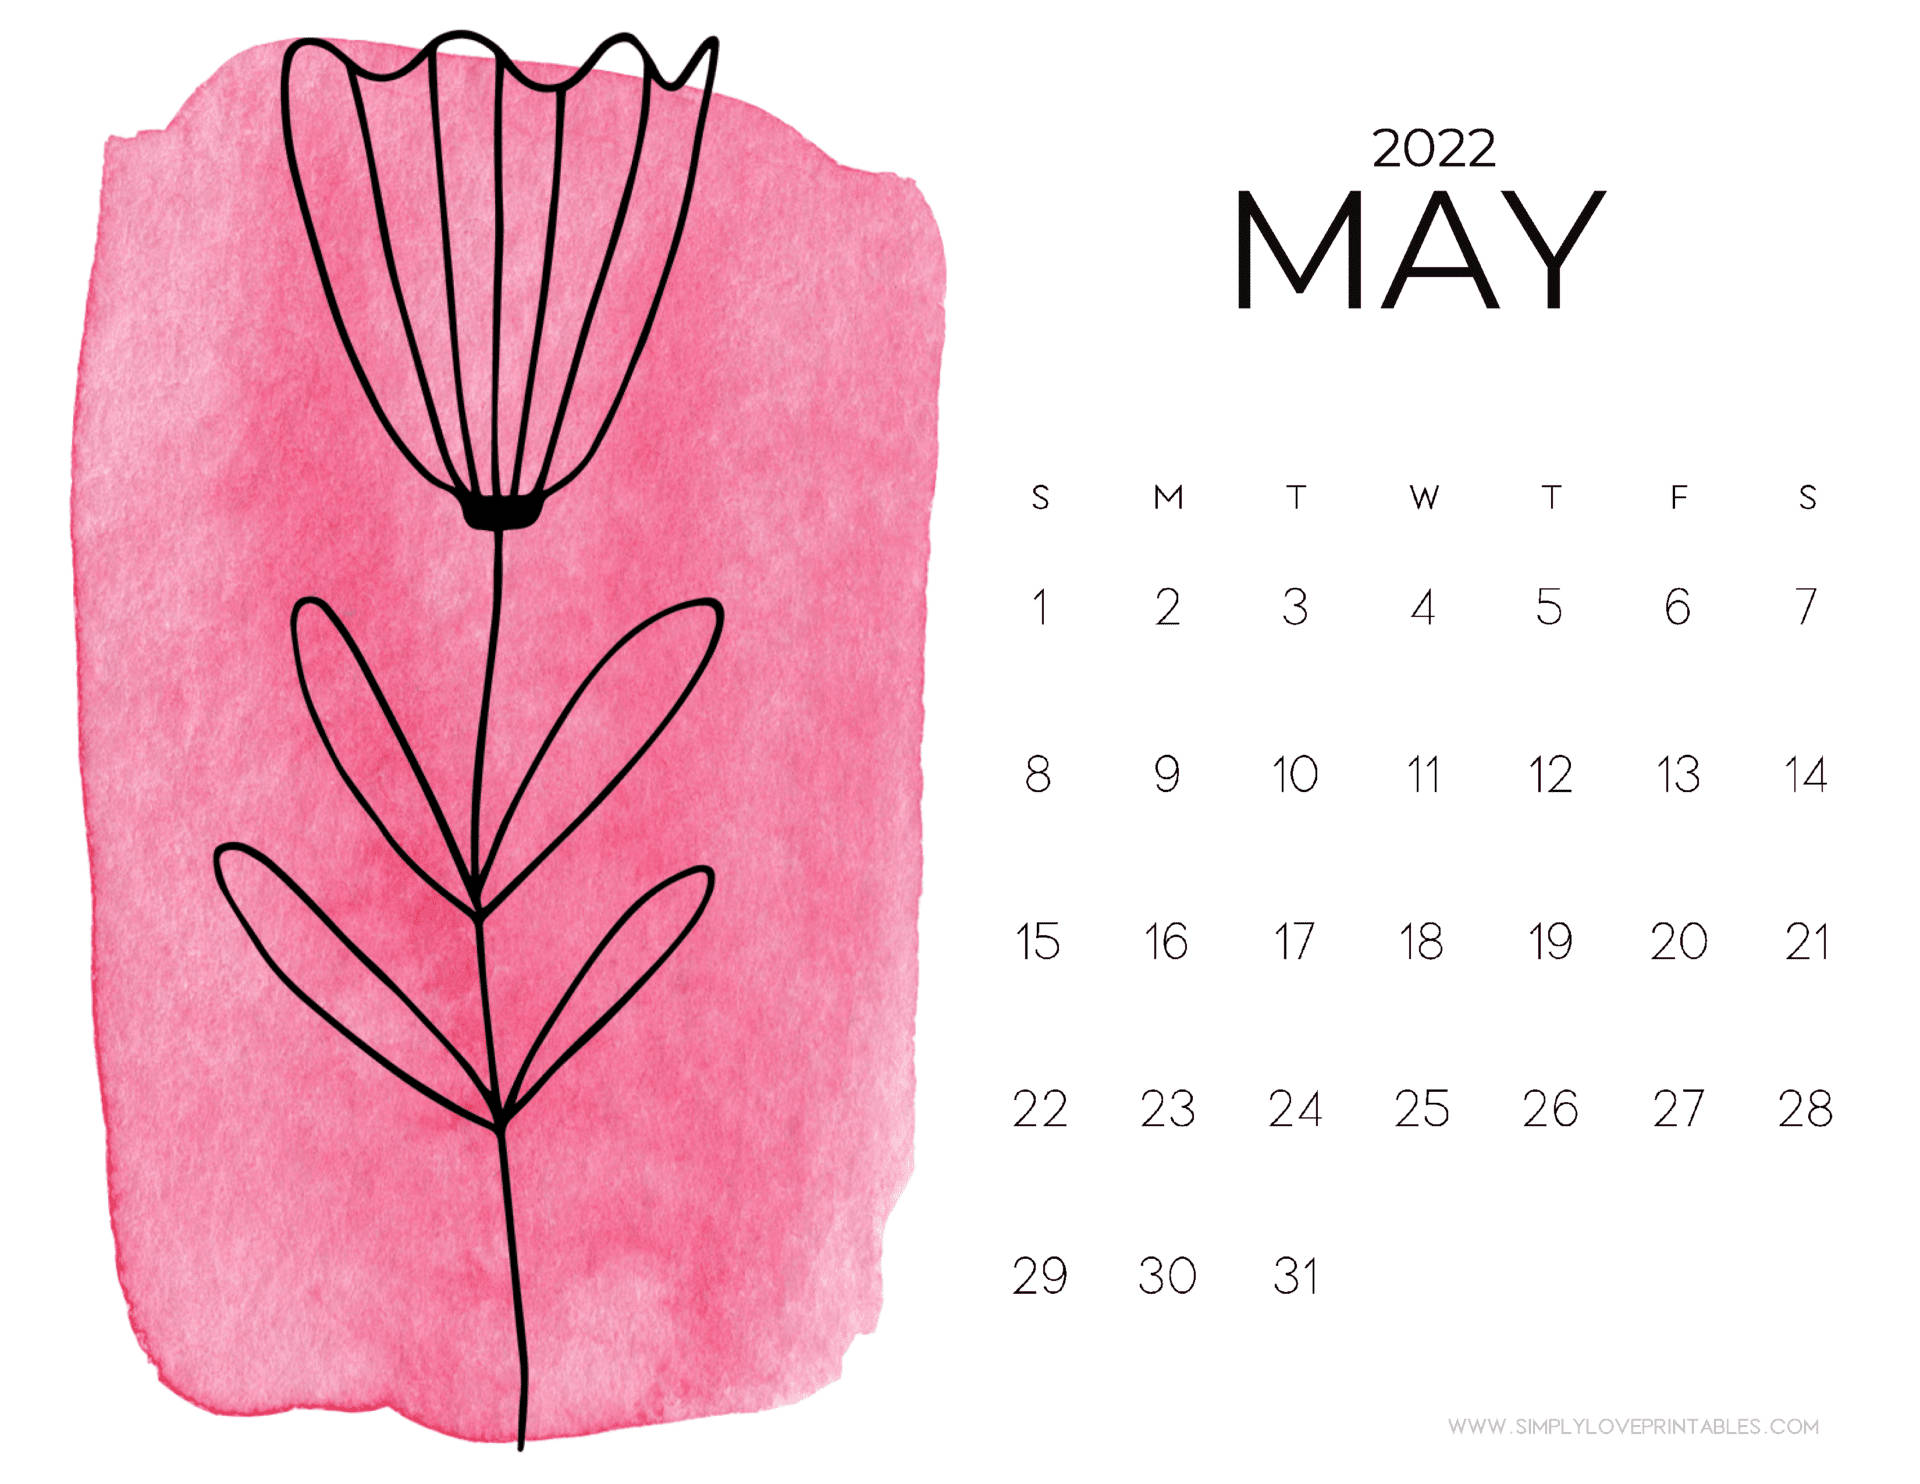 Planensie Ihre Maipläne Für Das Jahr 2022 Mit Diesem Bunten Kalender Wallpaper